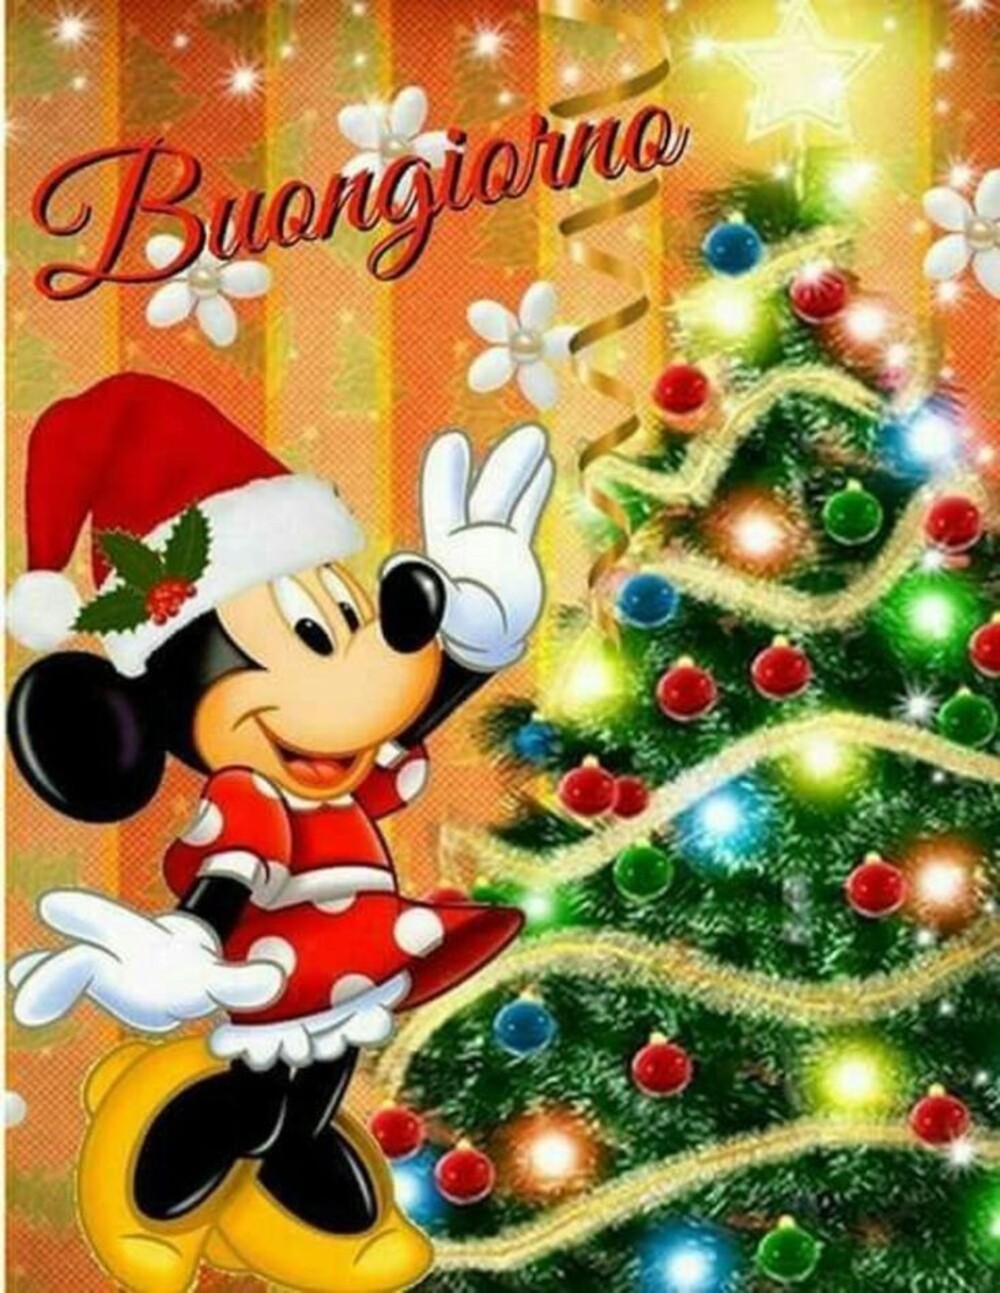 15 immagini belle di Buongiorno natalizio - Bgiorno.it